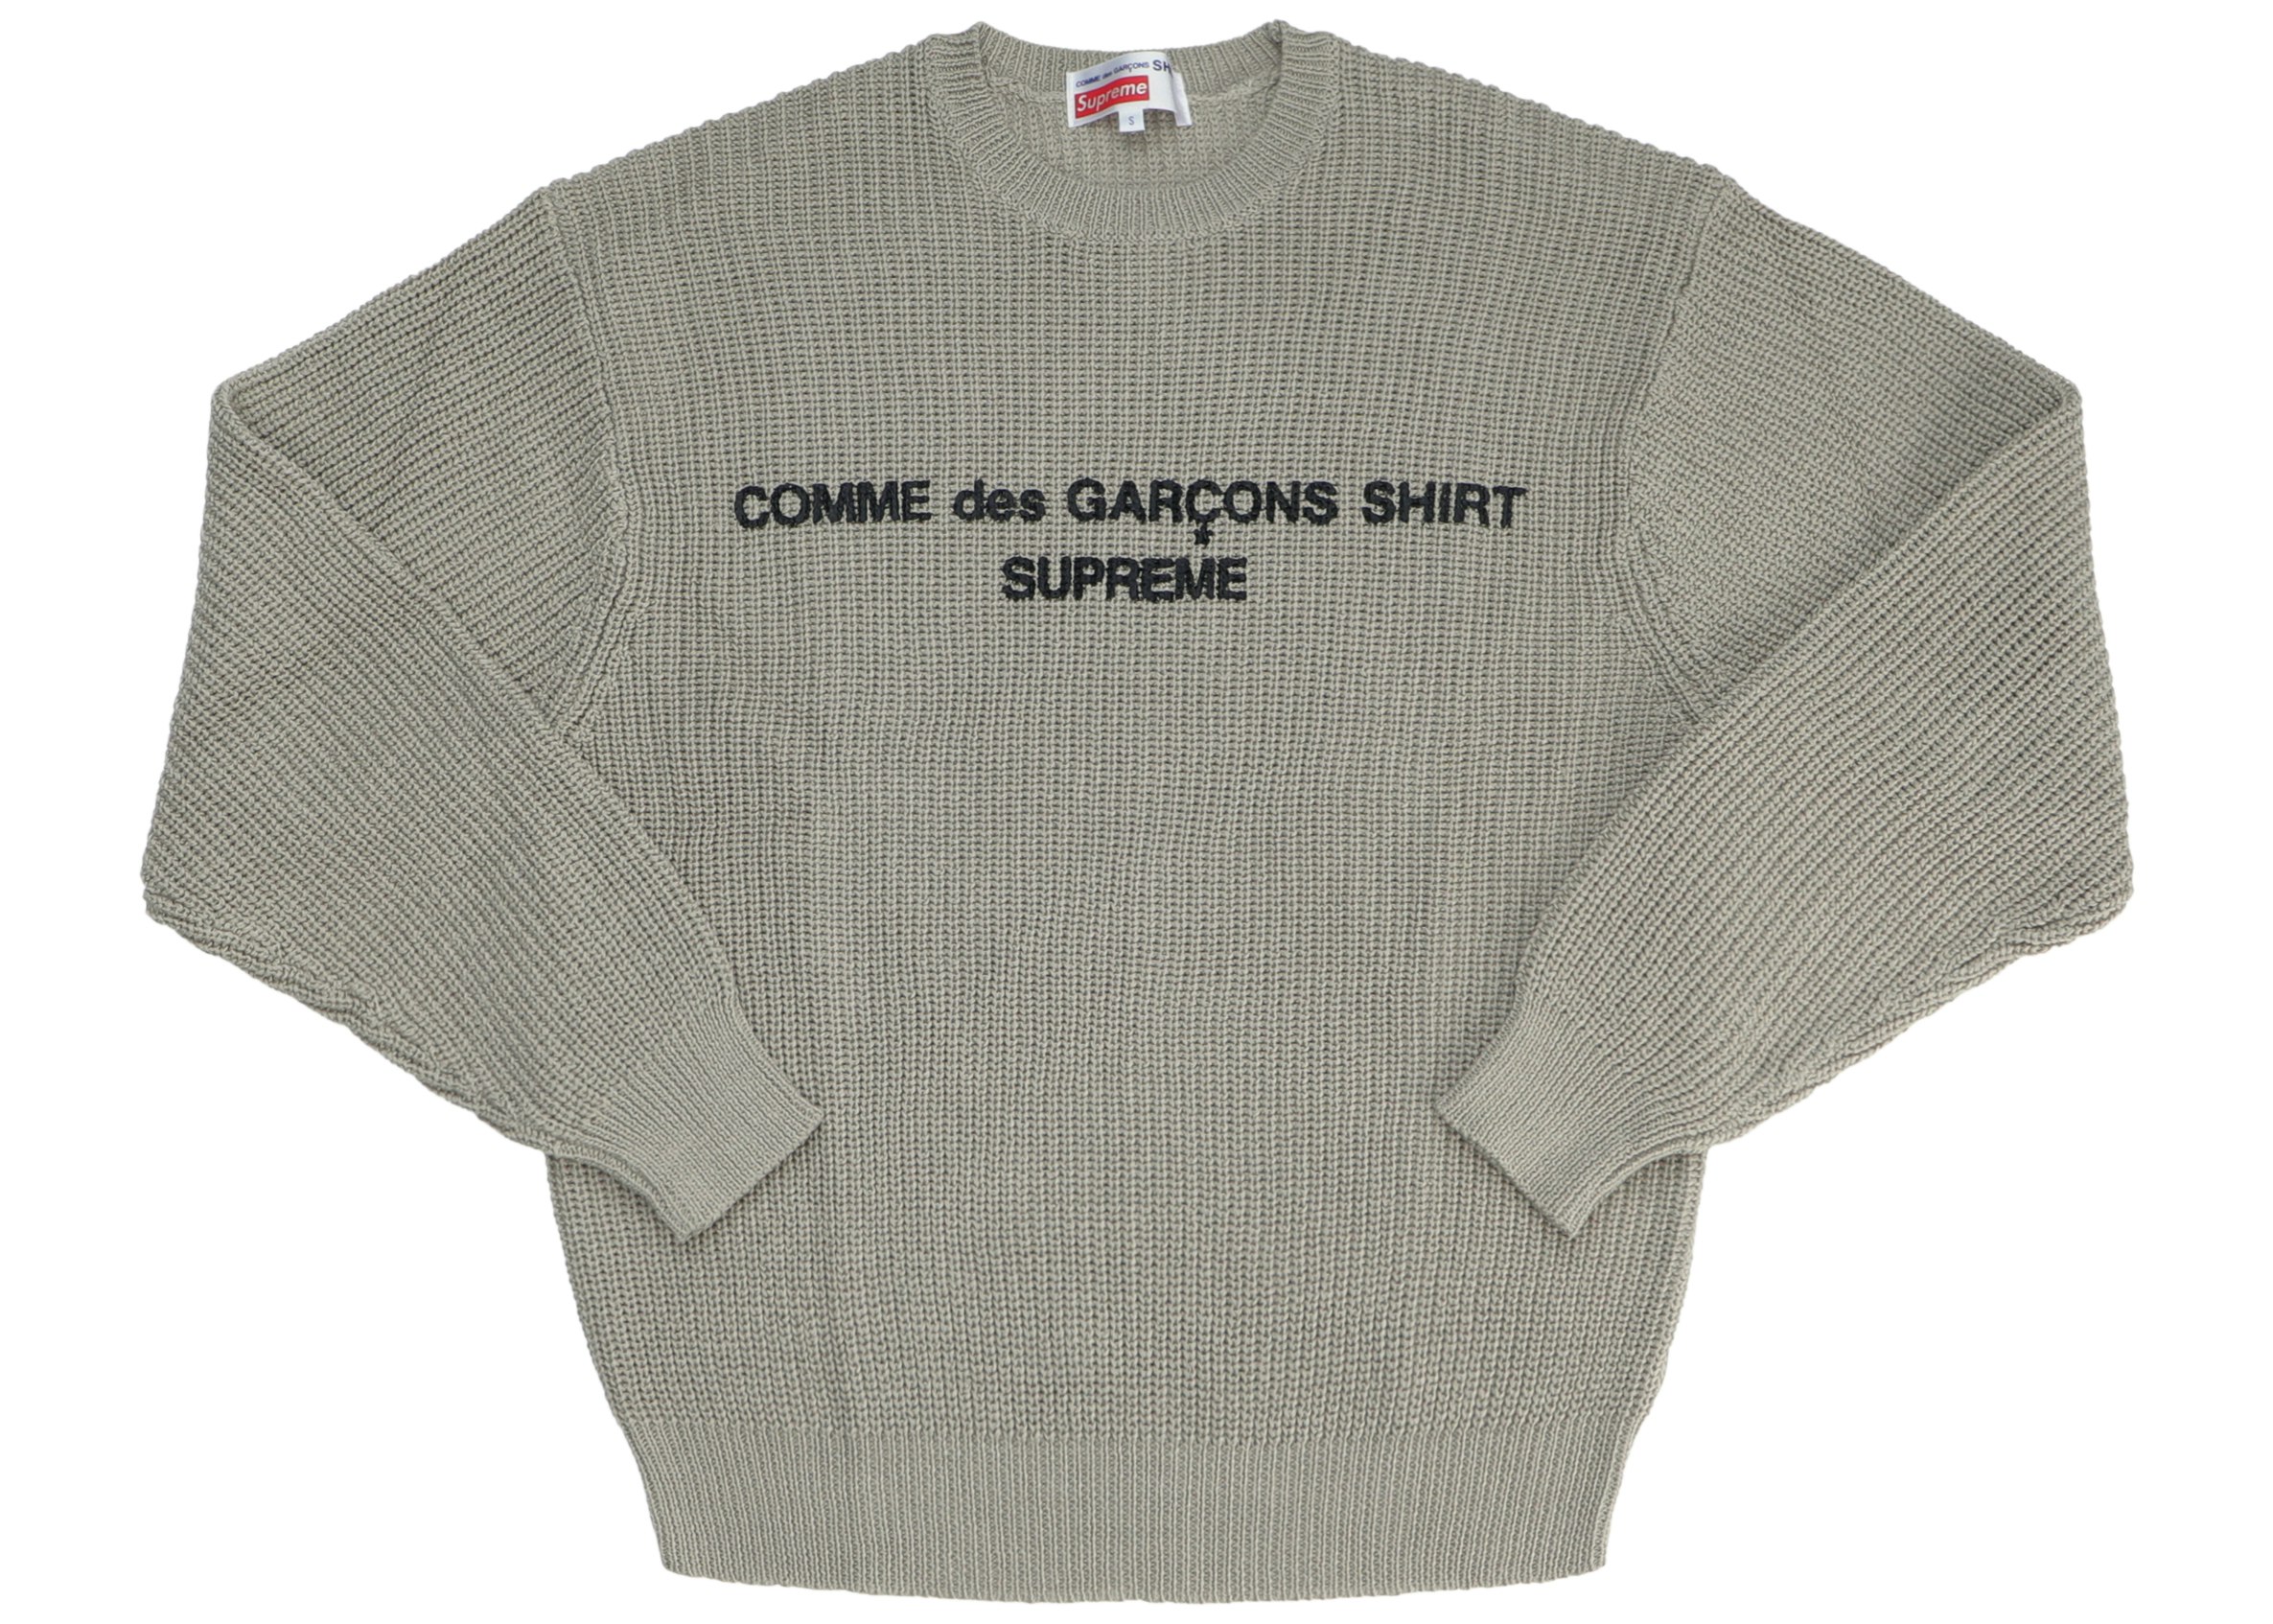 Supreme Comme des Garcons SHIRT Sweater Tan - FW18